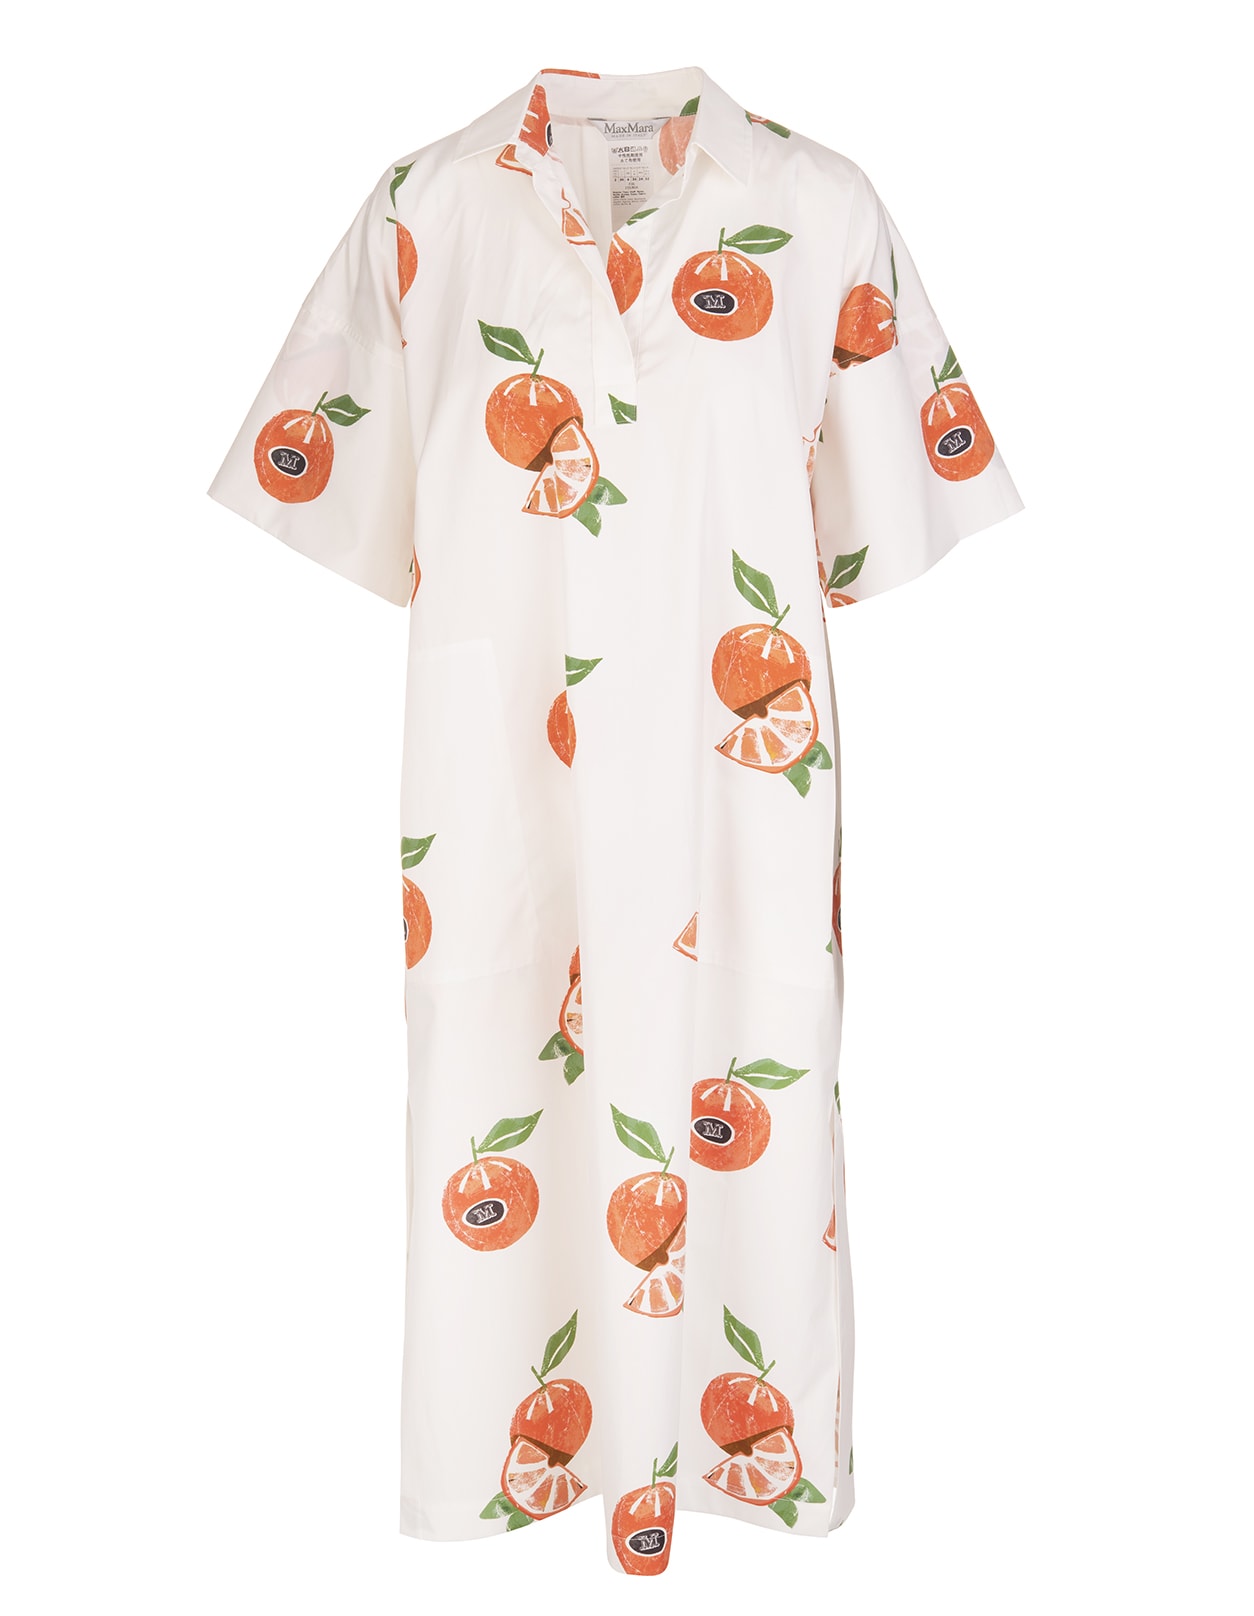 Max Mara Alton White Dress With Oranges